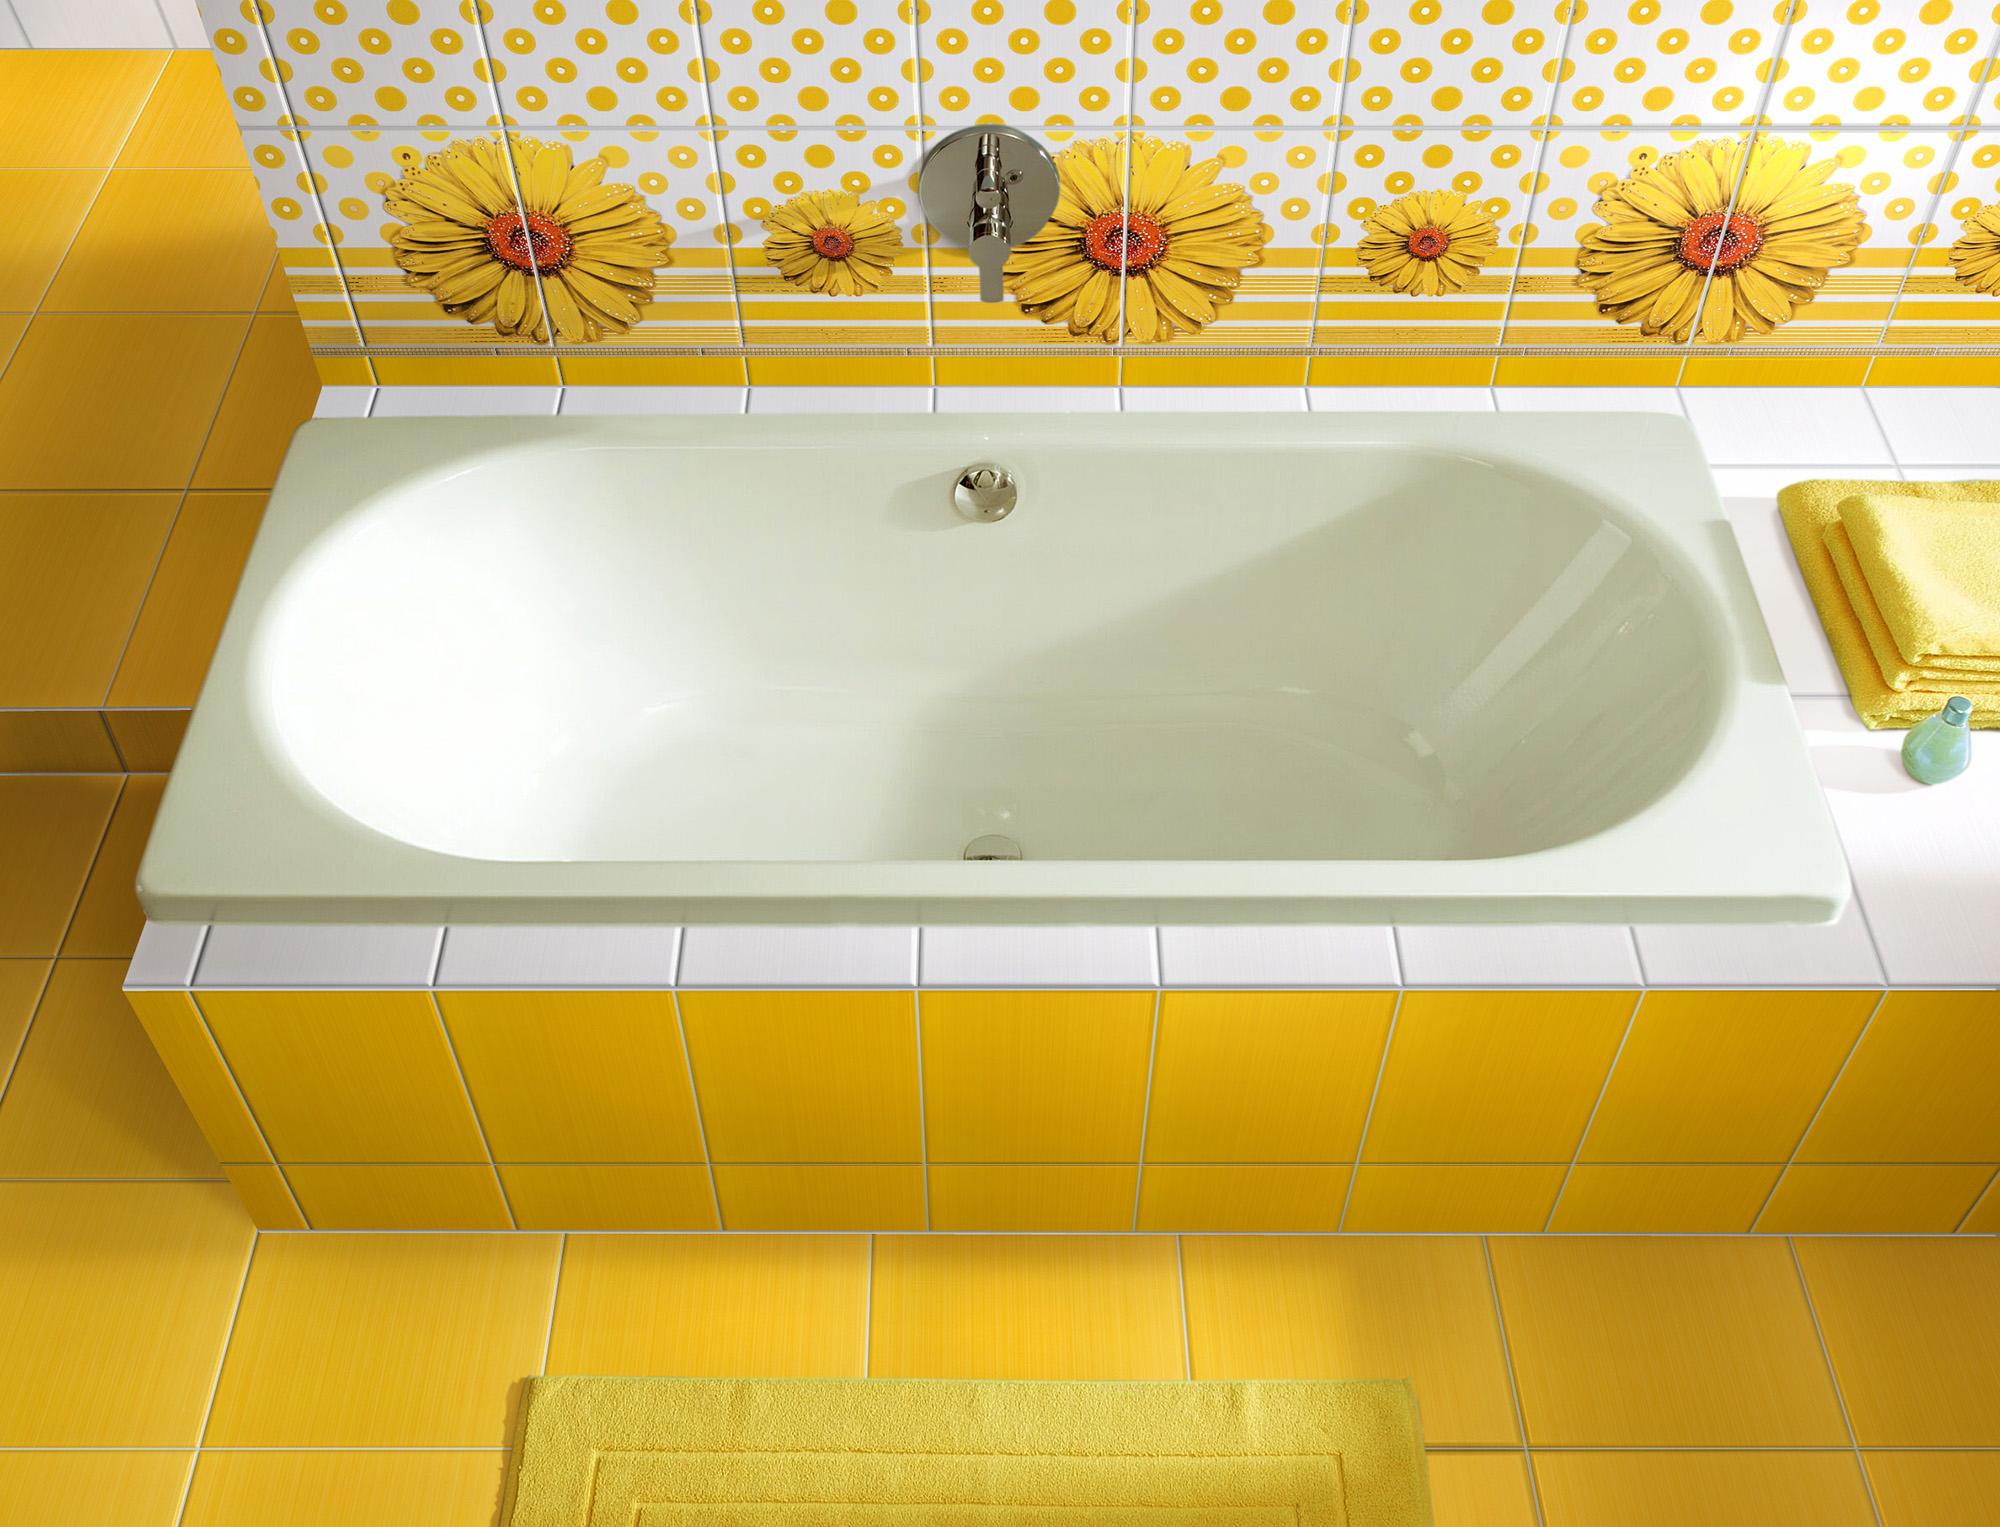 Желтая плитка в ванной